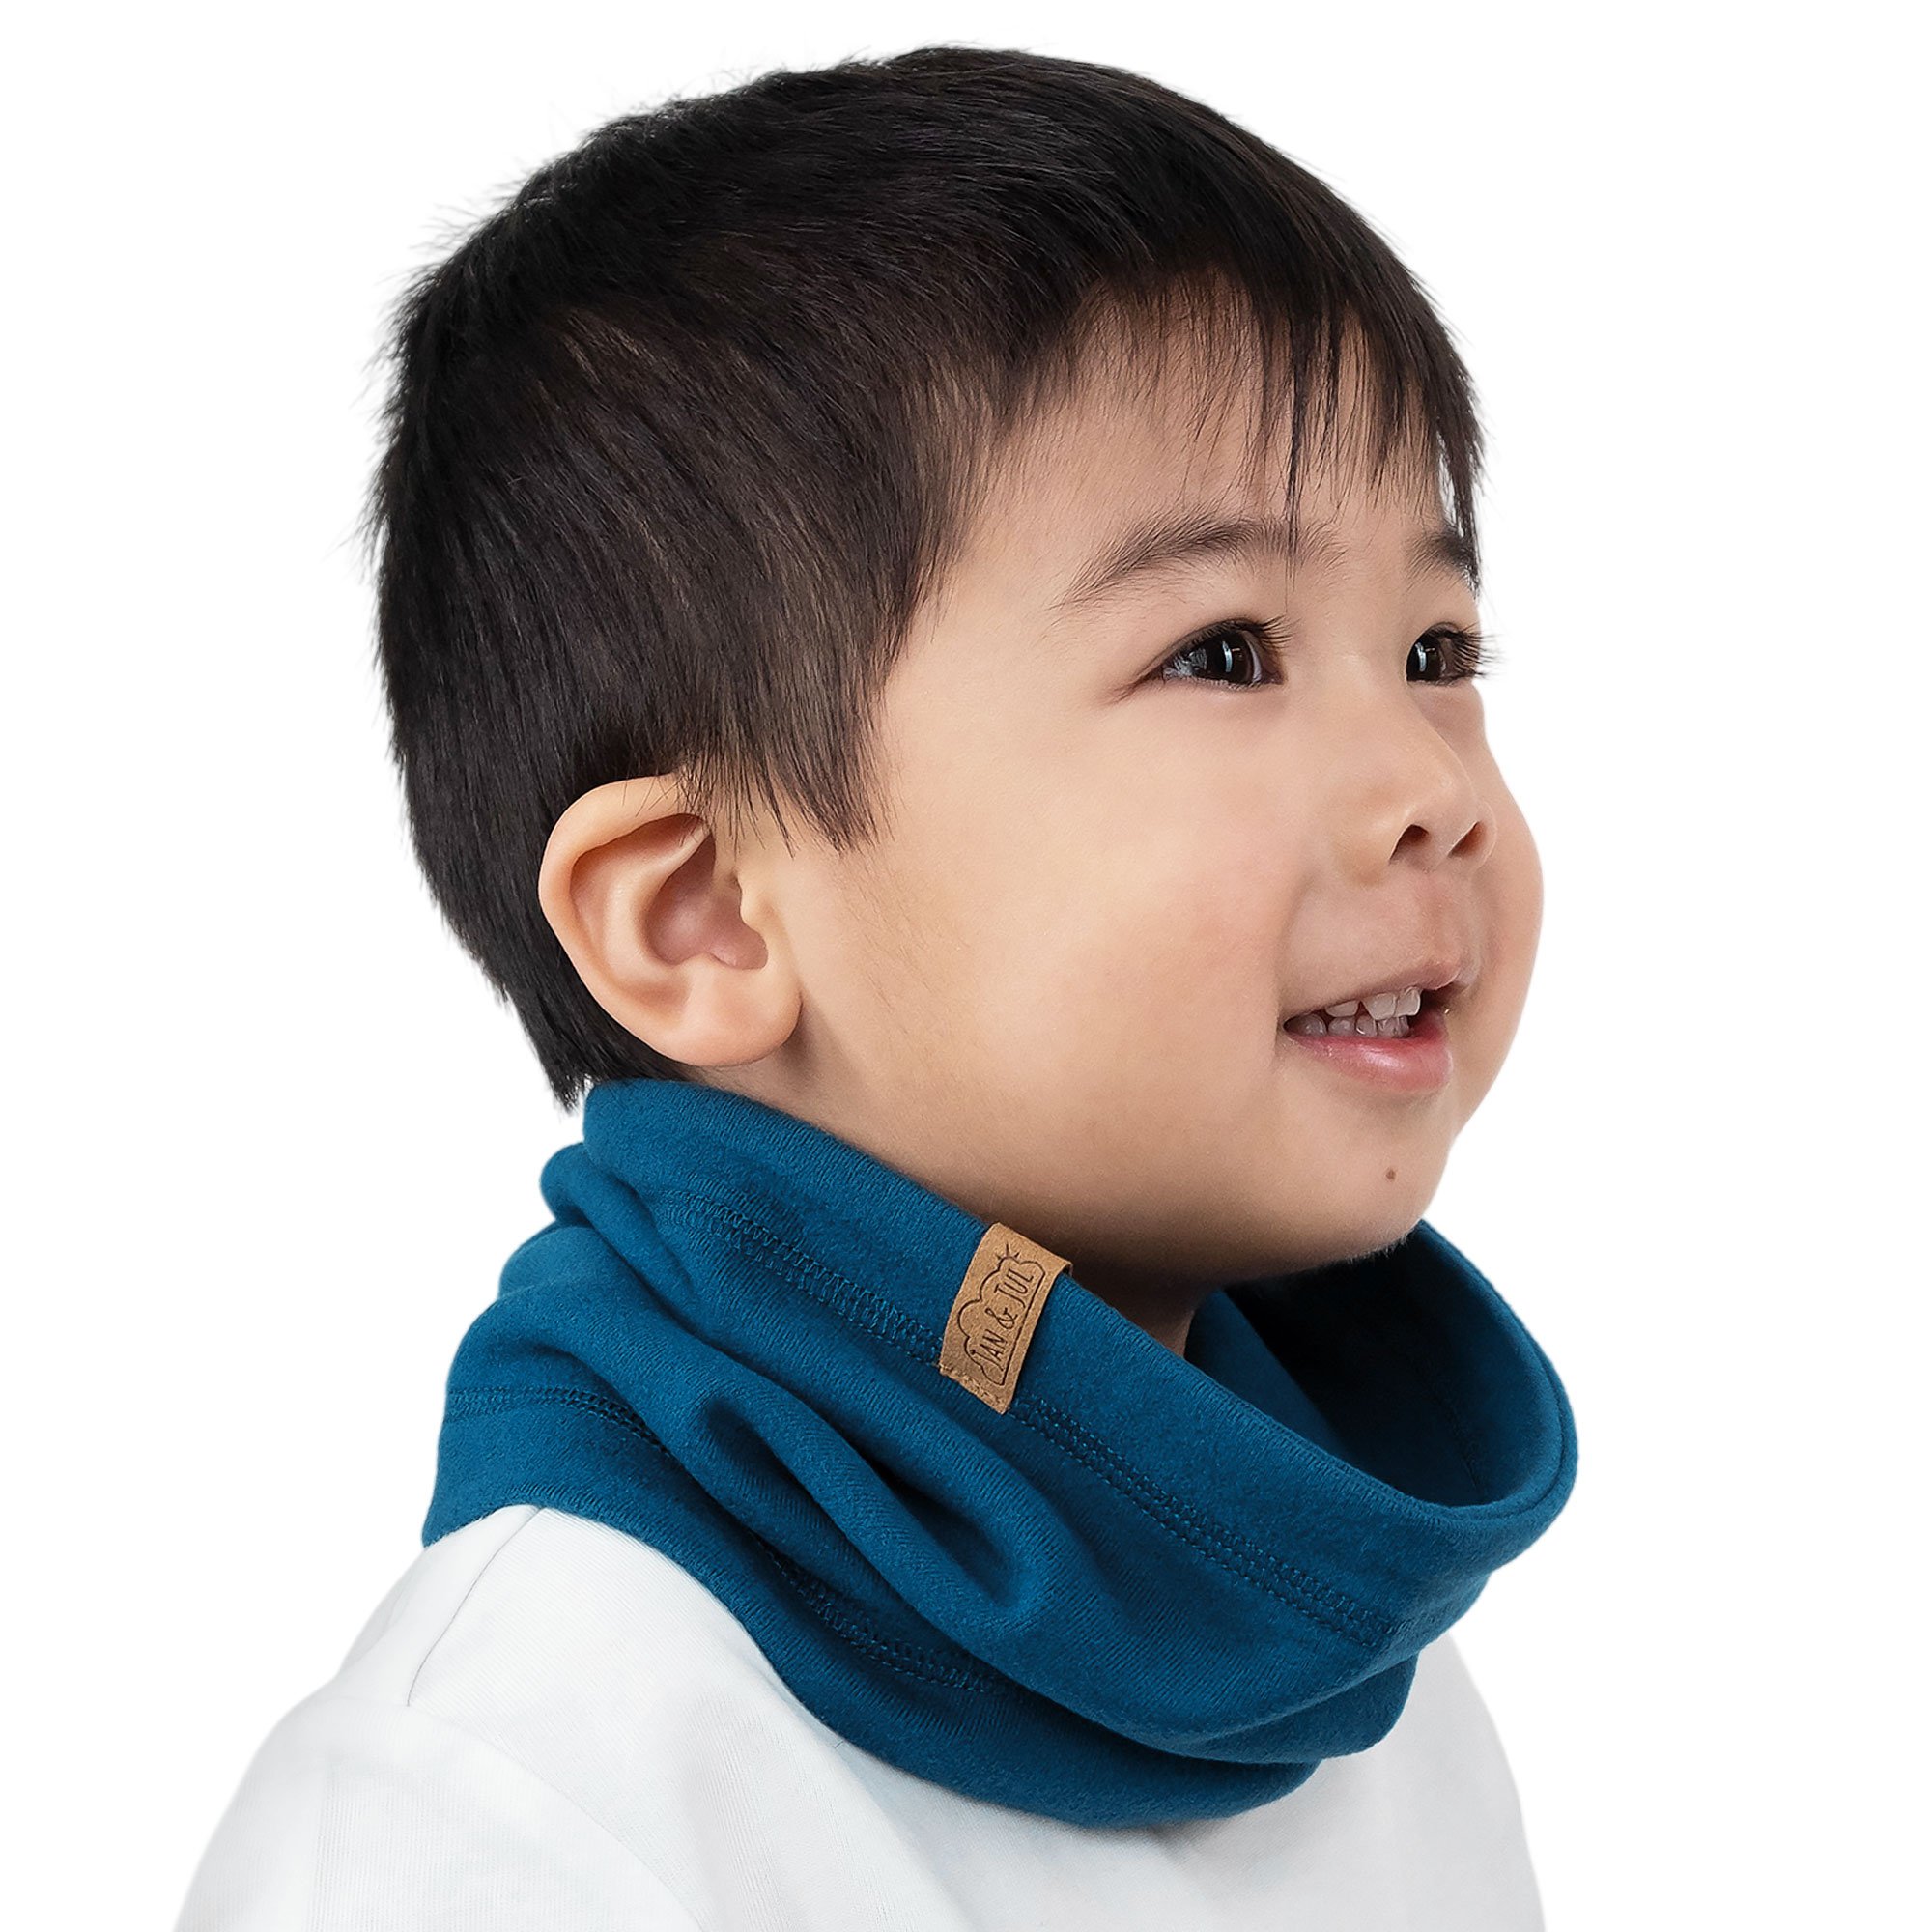 Kingmaker Kid's Round Neck Warm Inner Wear/Thermal wear for Winter